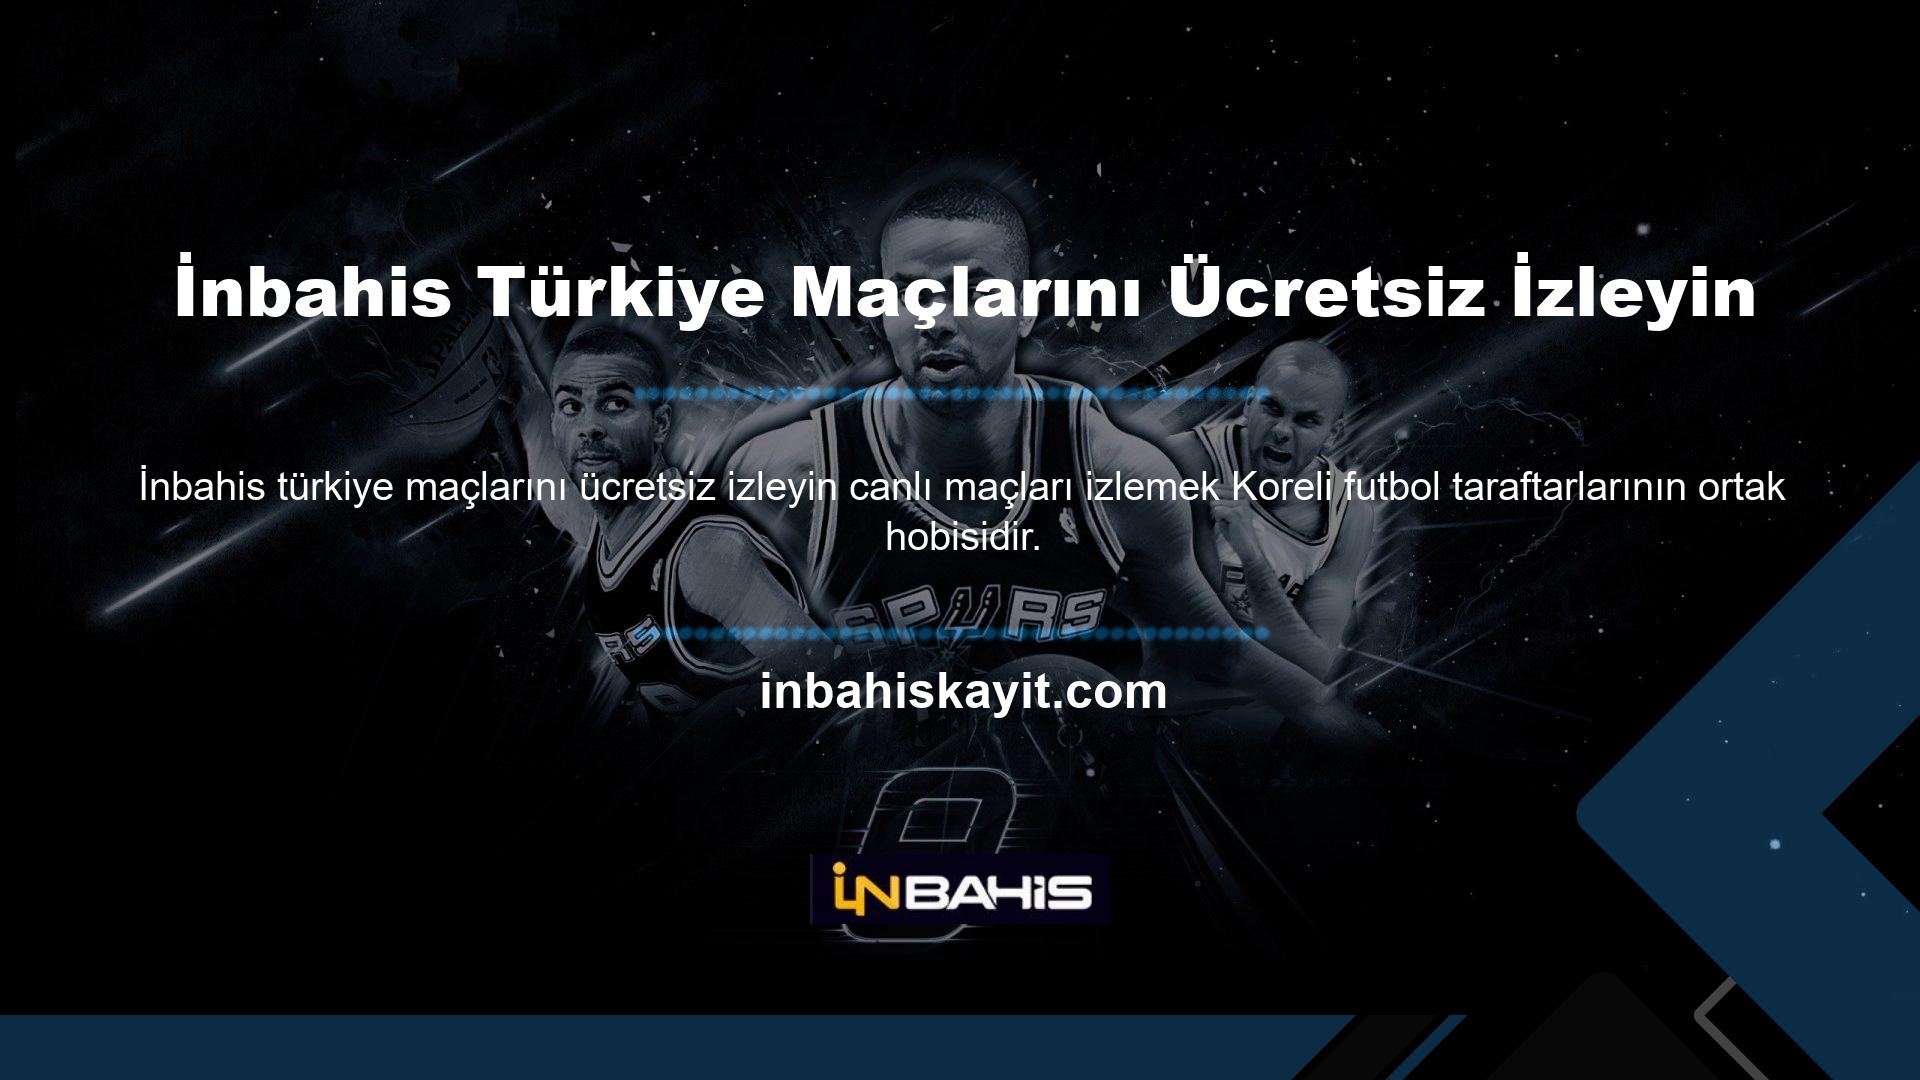 İnbahis, bu yayınları TV ekranlarından izleyemeyen futbolseverler için ücretsiz canlı yayın ve Türkiye maçlarının maç yayınlarını sunmaktadır